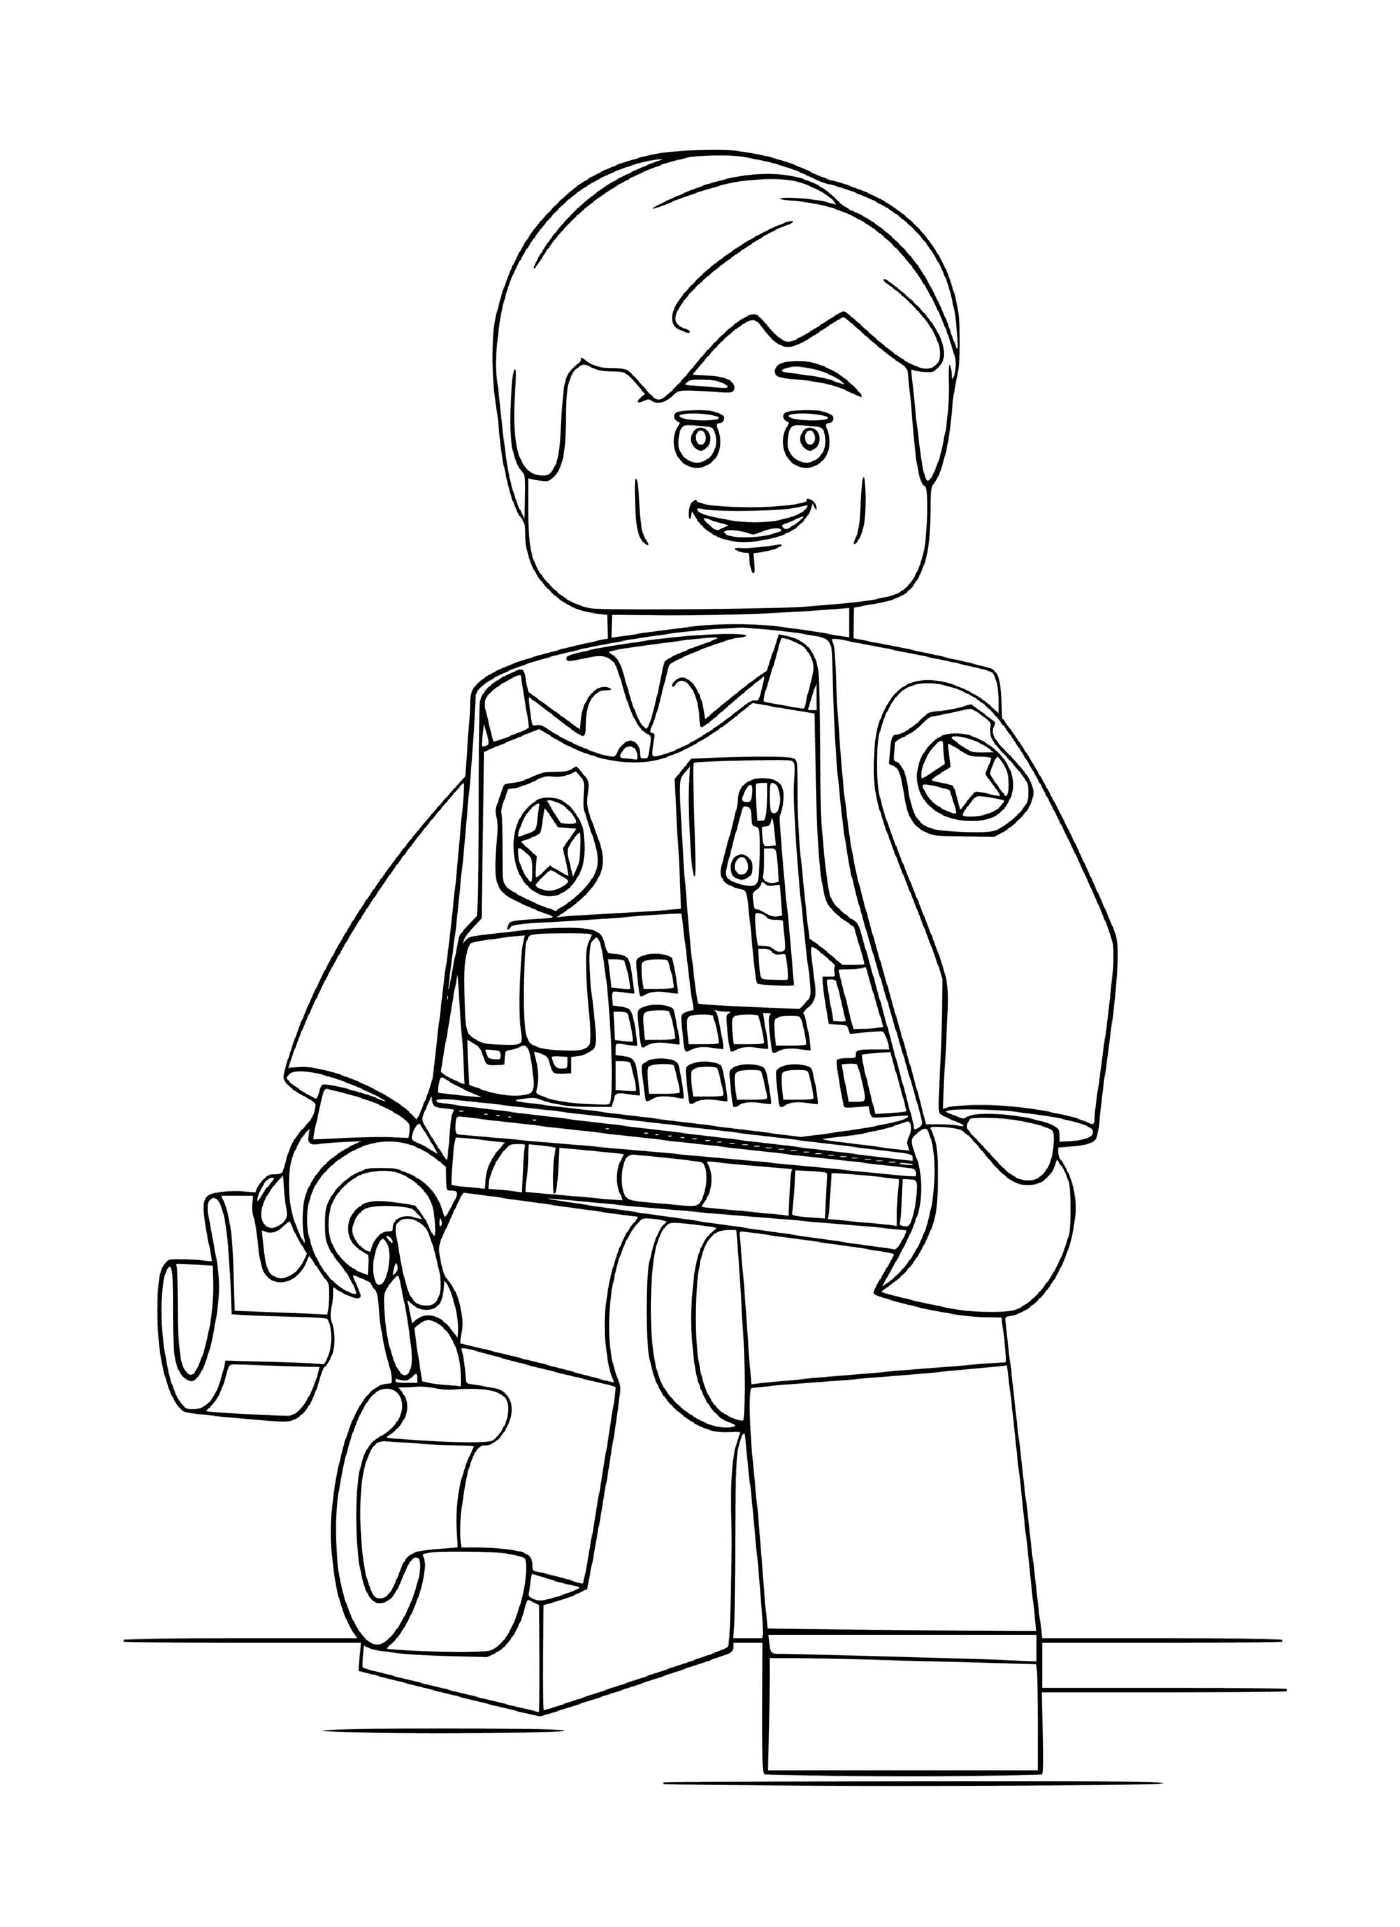  Personagem Lego policial algemado 